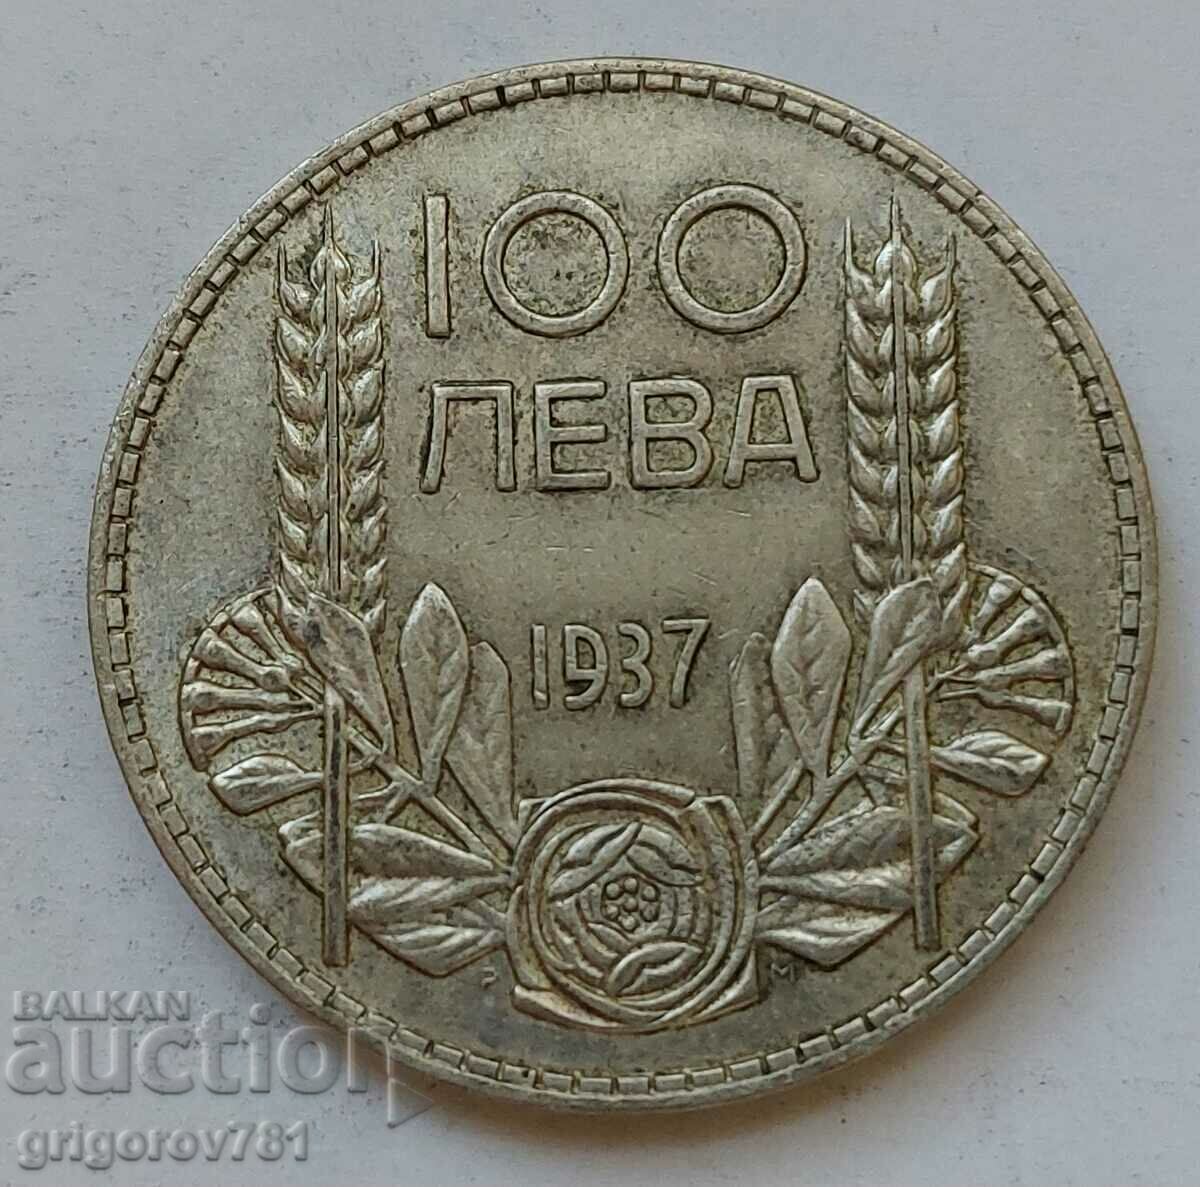 Ασήμι 100 λέβα Βουλγαρία 1937 - ασημένιο νόμισμα #141